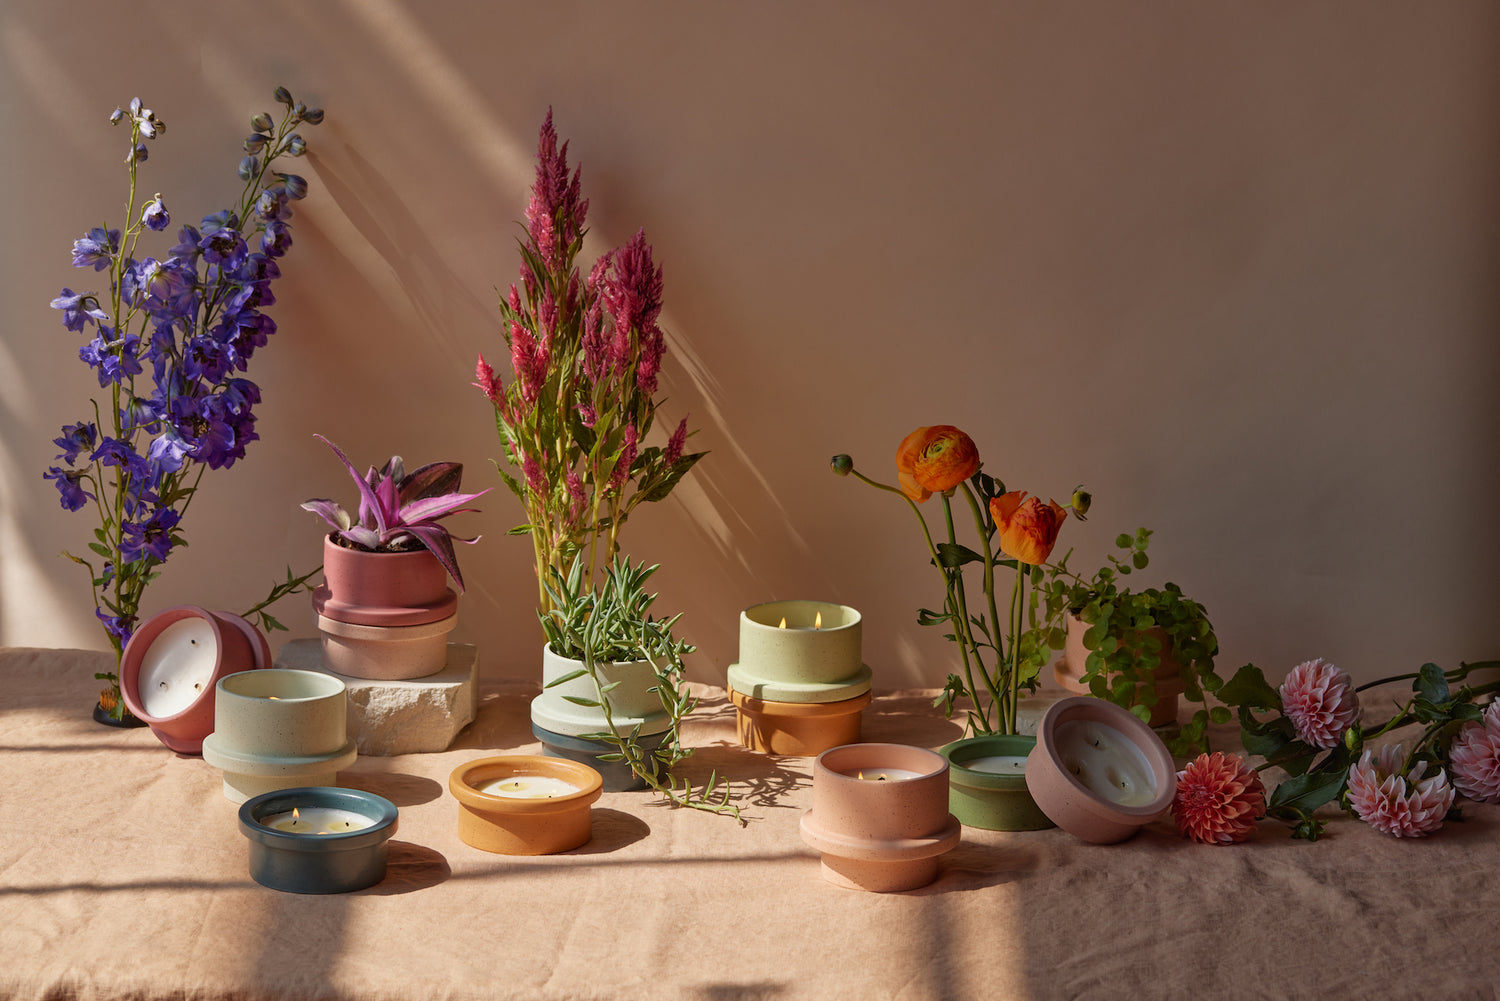 Linen & Crisp Air Notes Candle Refill Kit - Farmville Flower Basket